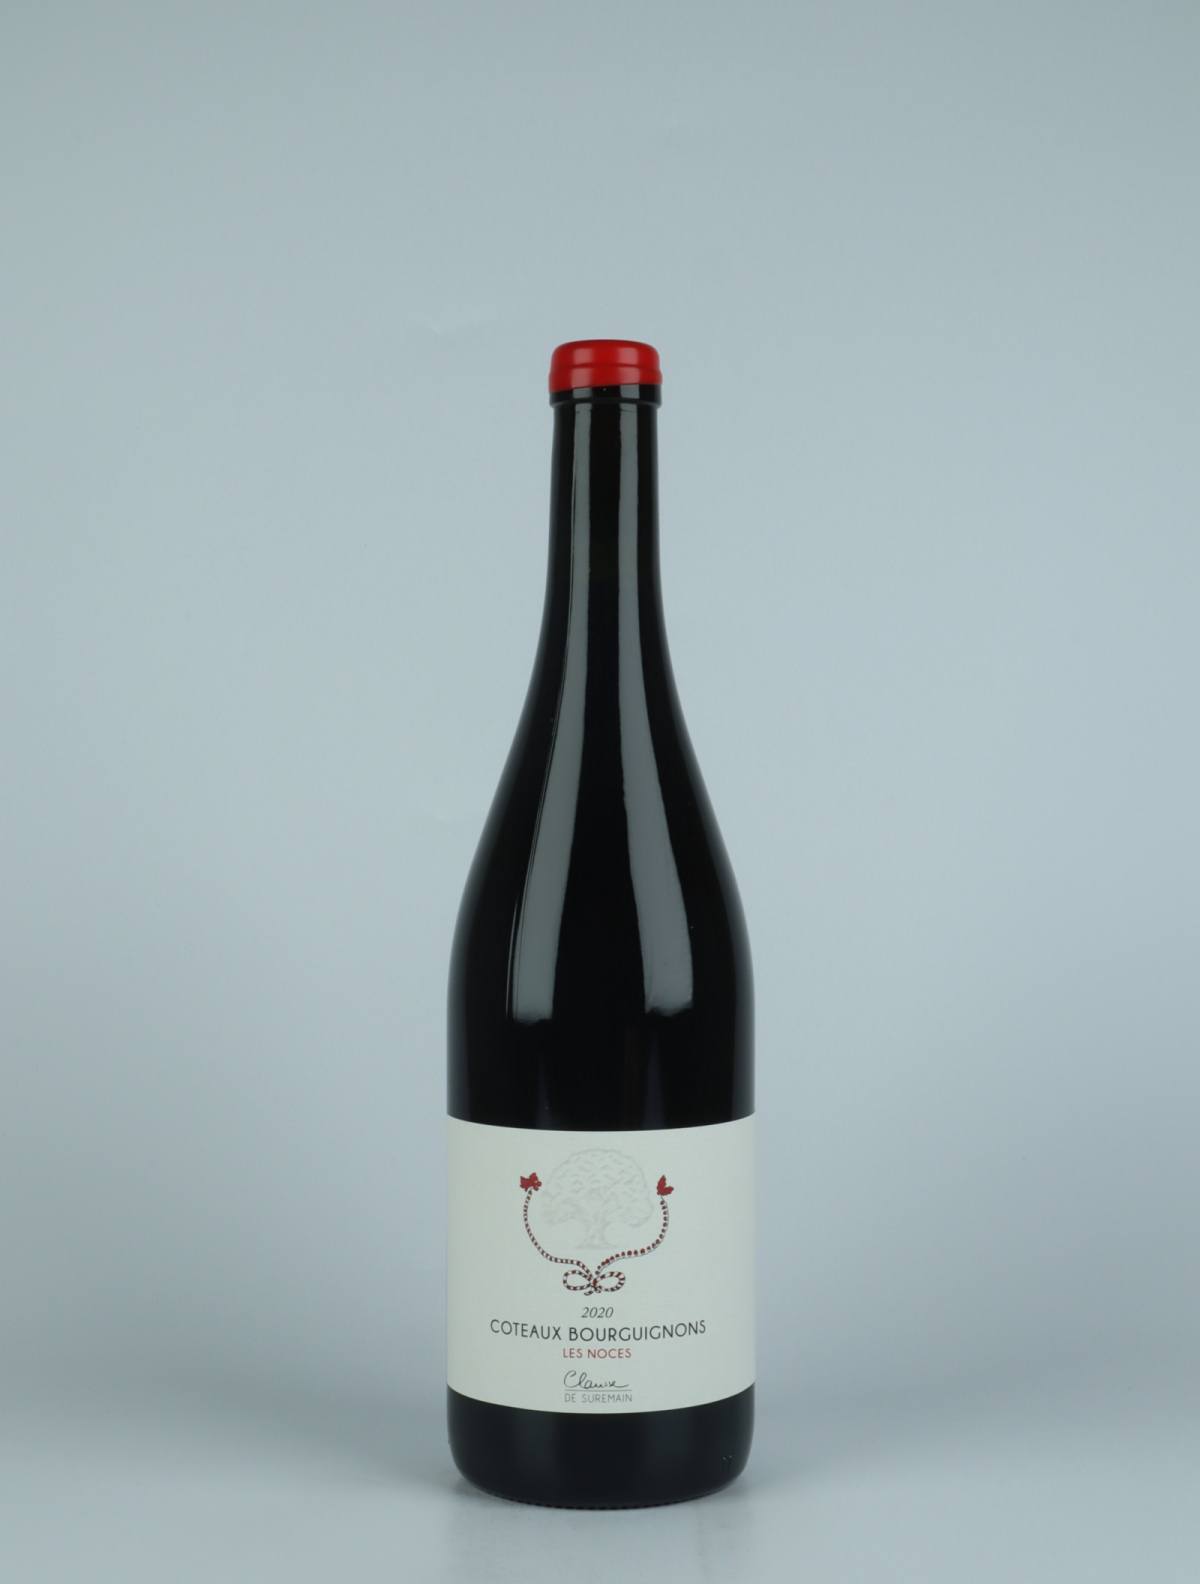 A bottle 2020 Côteaux Bourguignons - Les Noces Red wine from Clarisse de Suremain, Burgundy in France